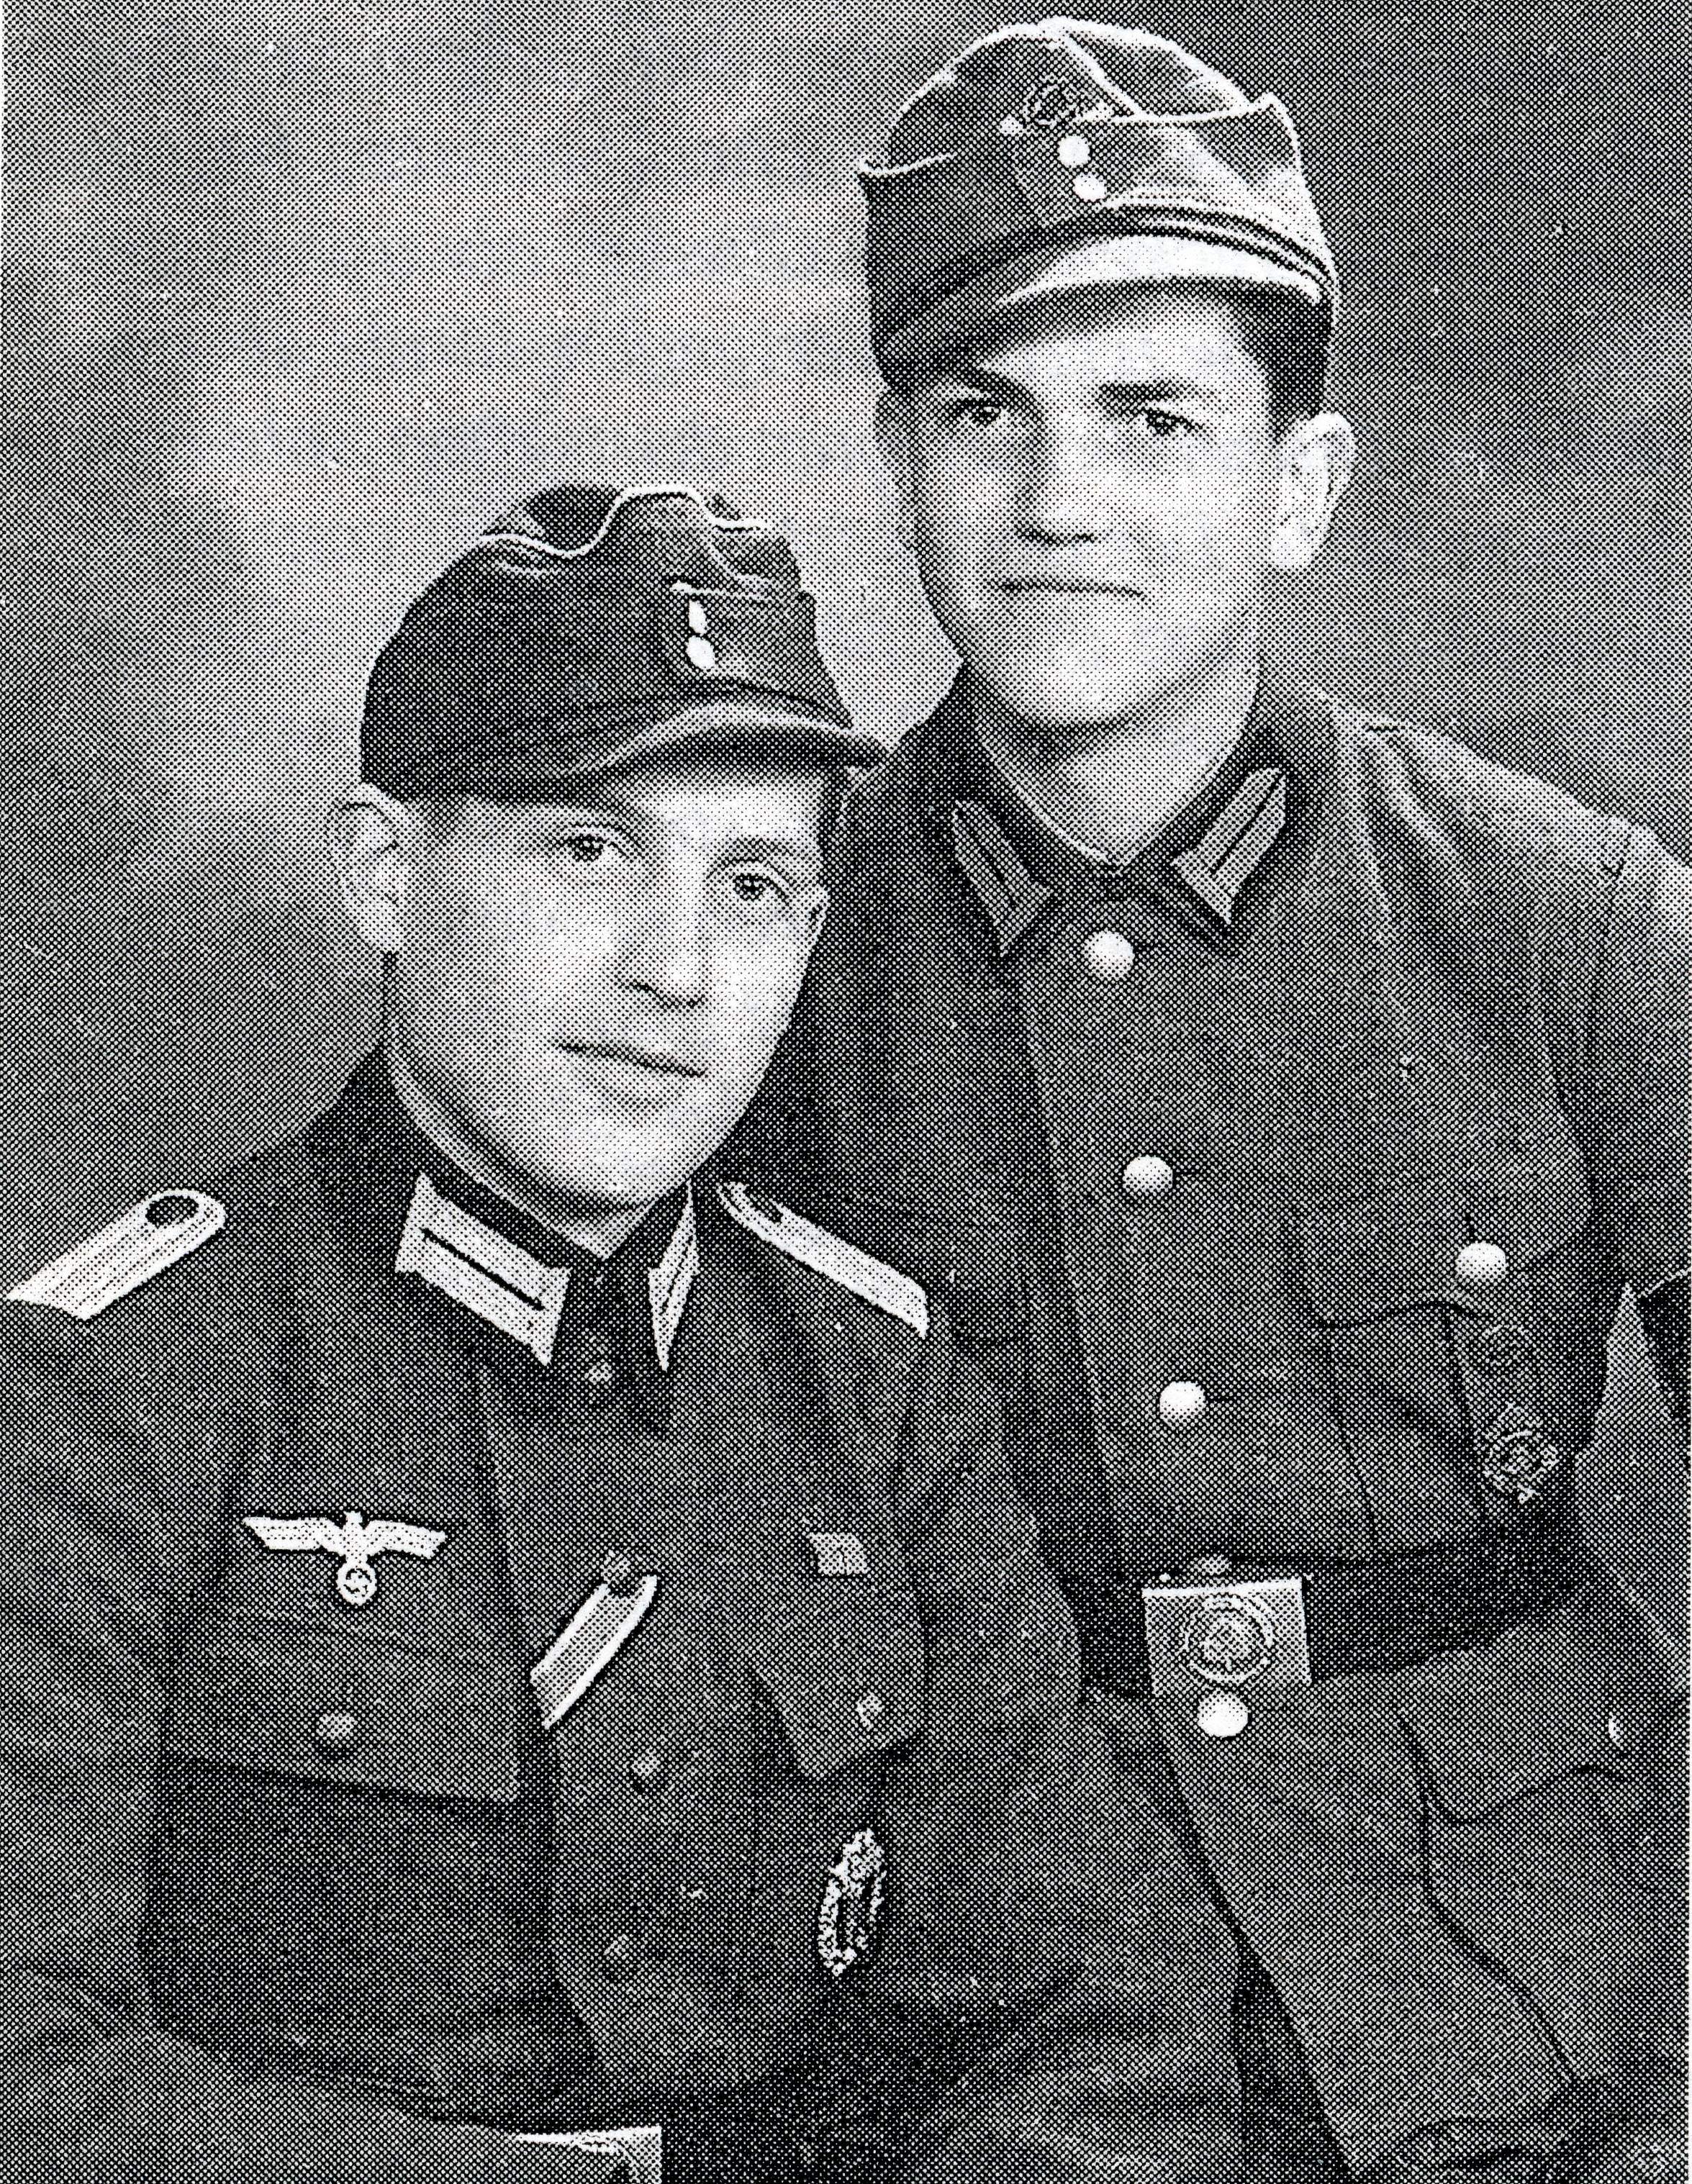 Links, Erwin Wiemer, 20.09.1920 gestorben am 06.08.1944 in Lettland bei Riga. Rechts, Lothar Wiemer, 26.06.1926, vermisst seit Februar 1945 bei Heiligenbeil, Ostpreussen.